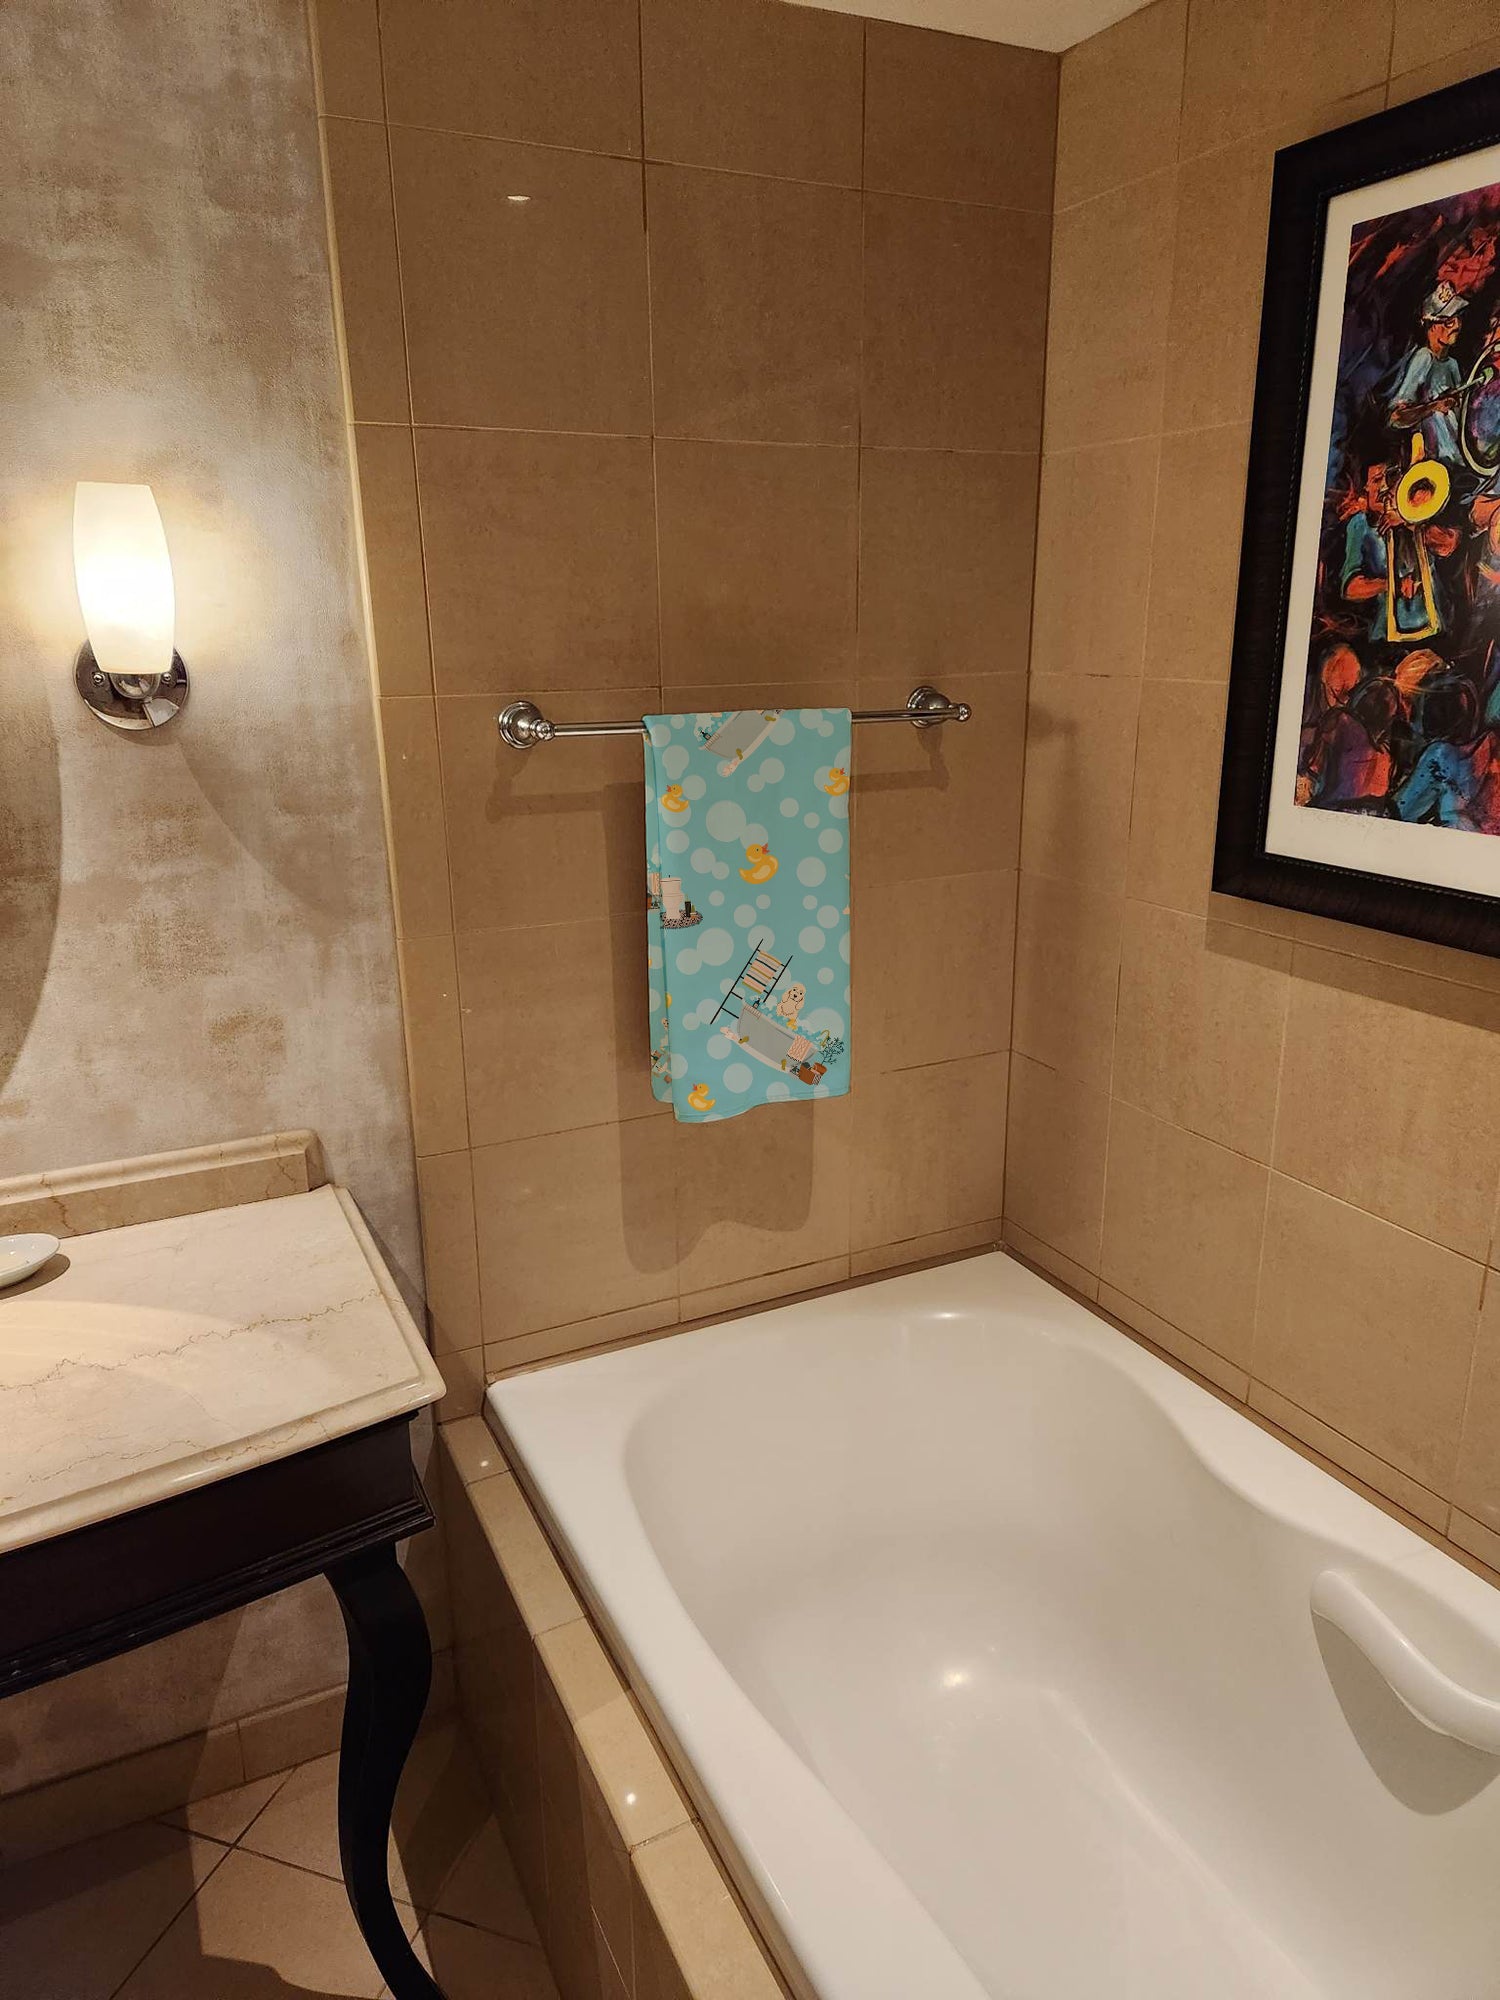 Buy this Buff Cocker Spaniel in Bathtub Bath Towel Large